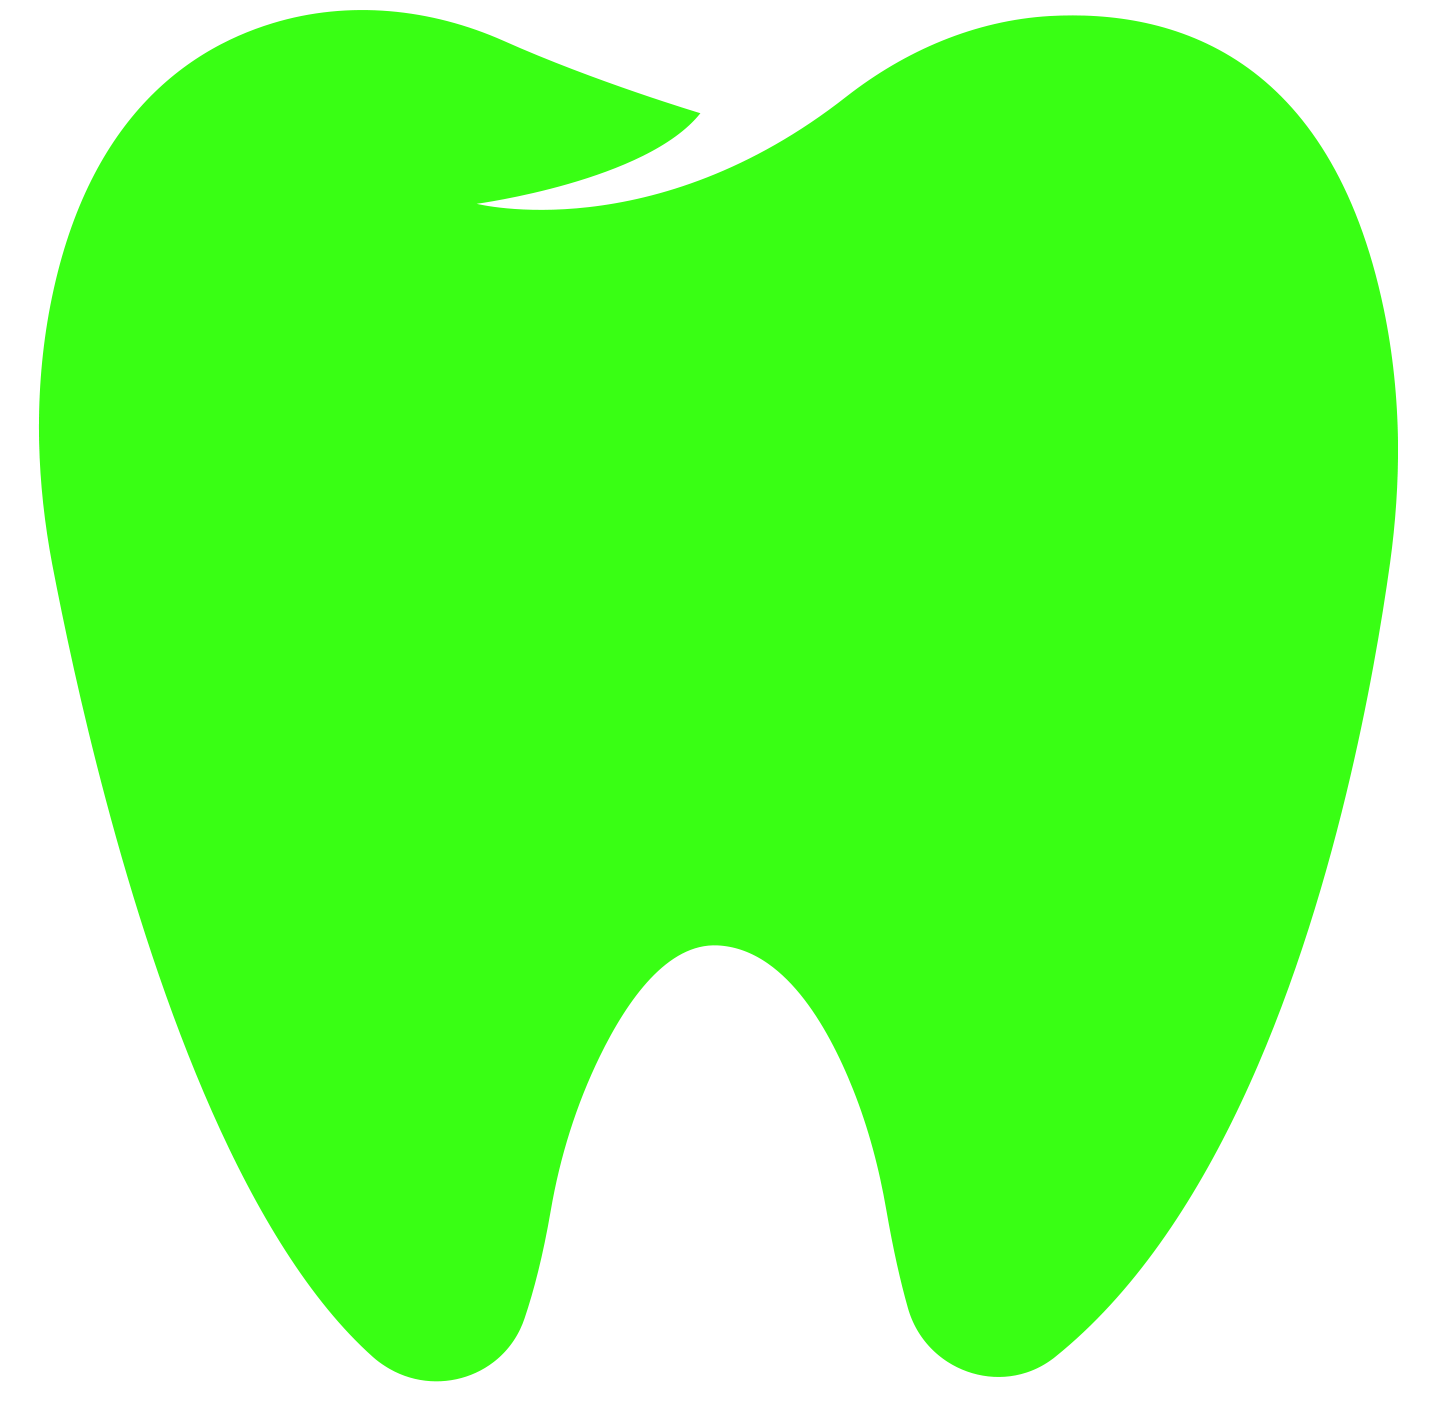 The Green Teeth